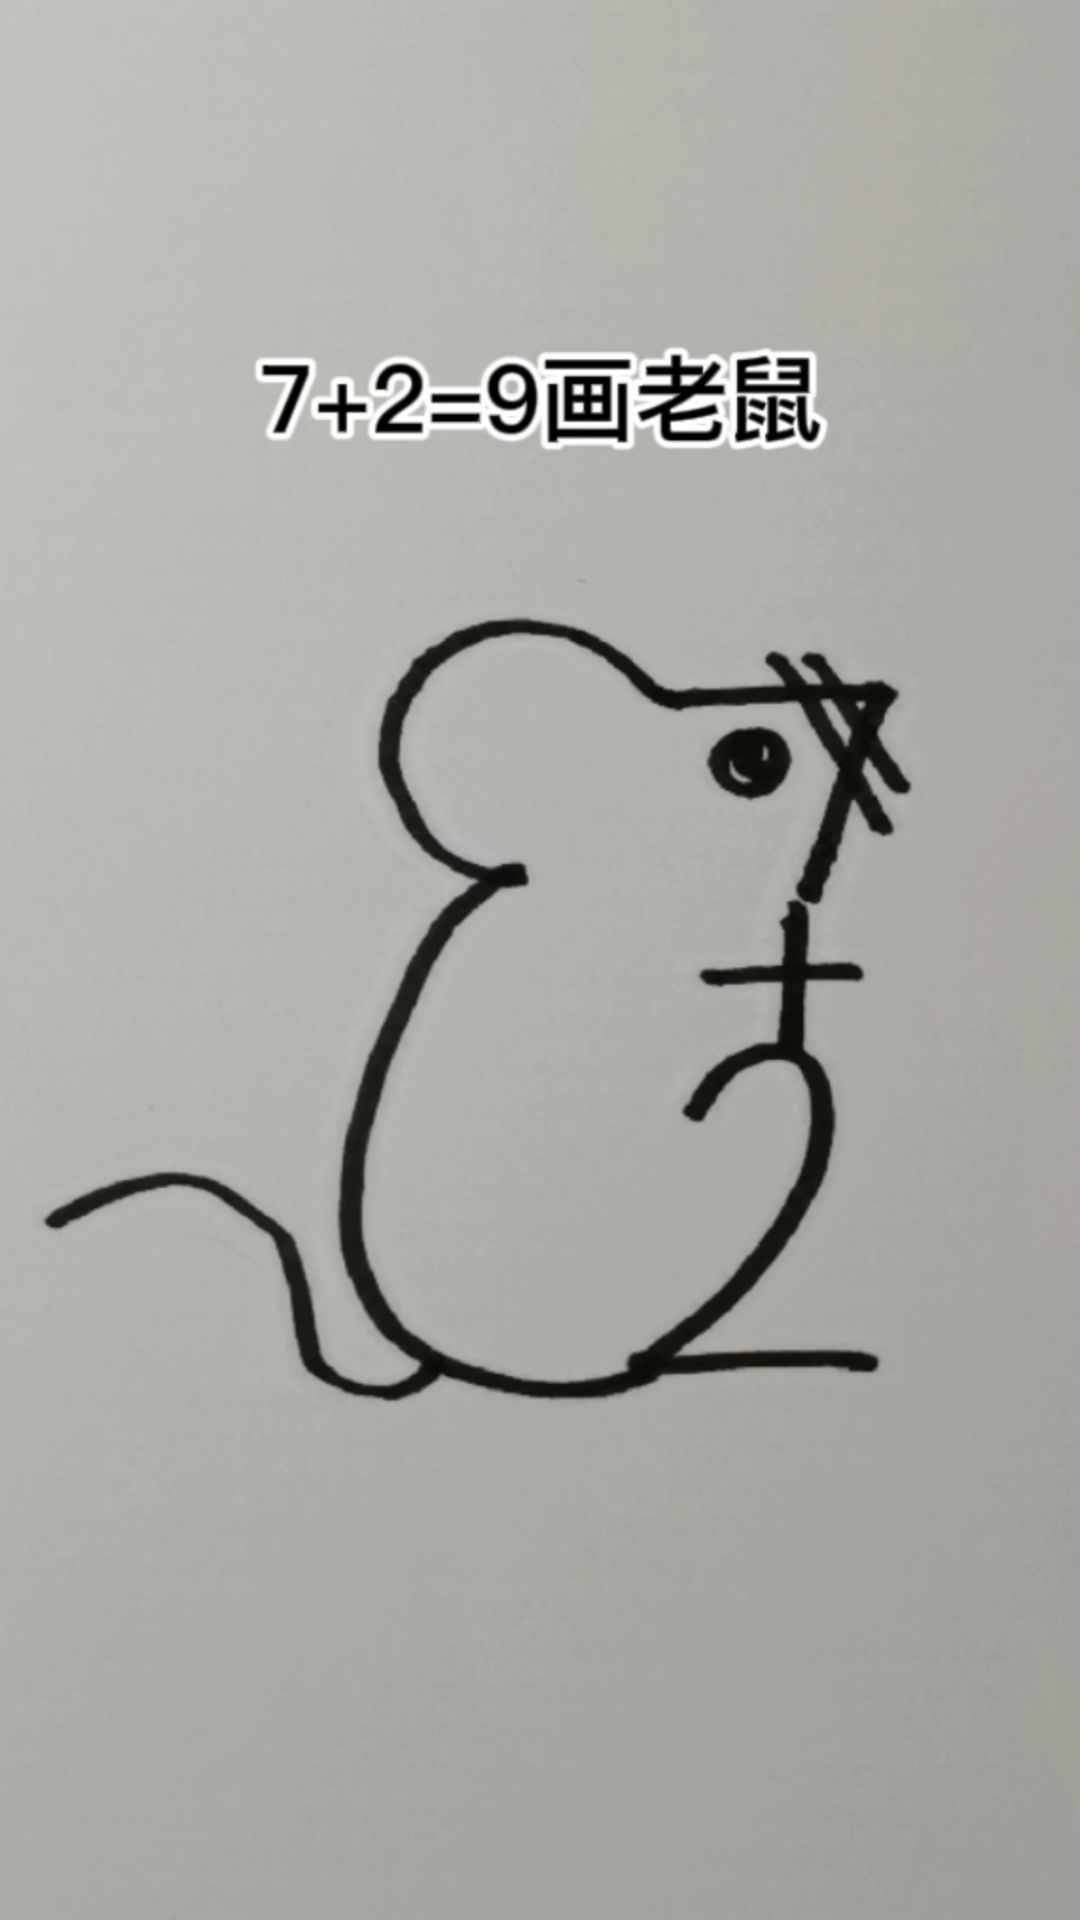 数字画老鼠数字化图片